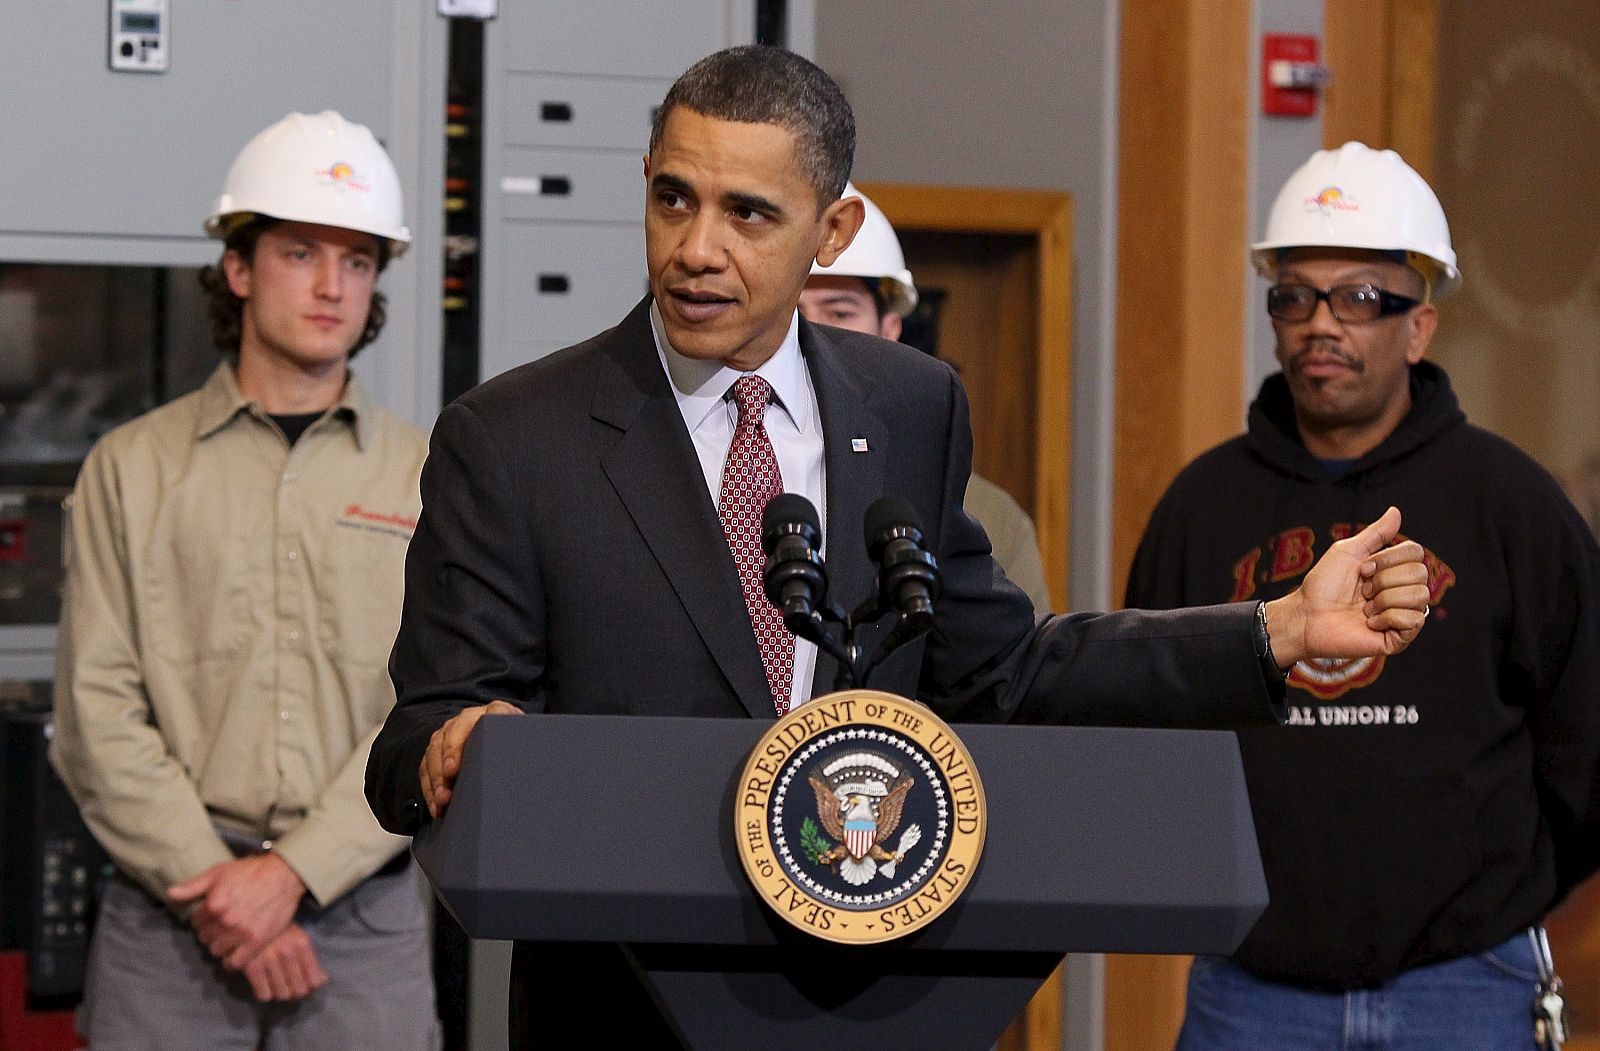 El presidente de los Estados Unidos, Barack Obama, ofrece unas declaraciones durante una visita al centro de formación de trabajadores de la Hermandad Internacional de Electricistas en Maryland.